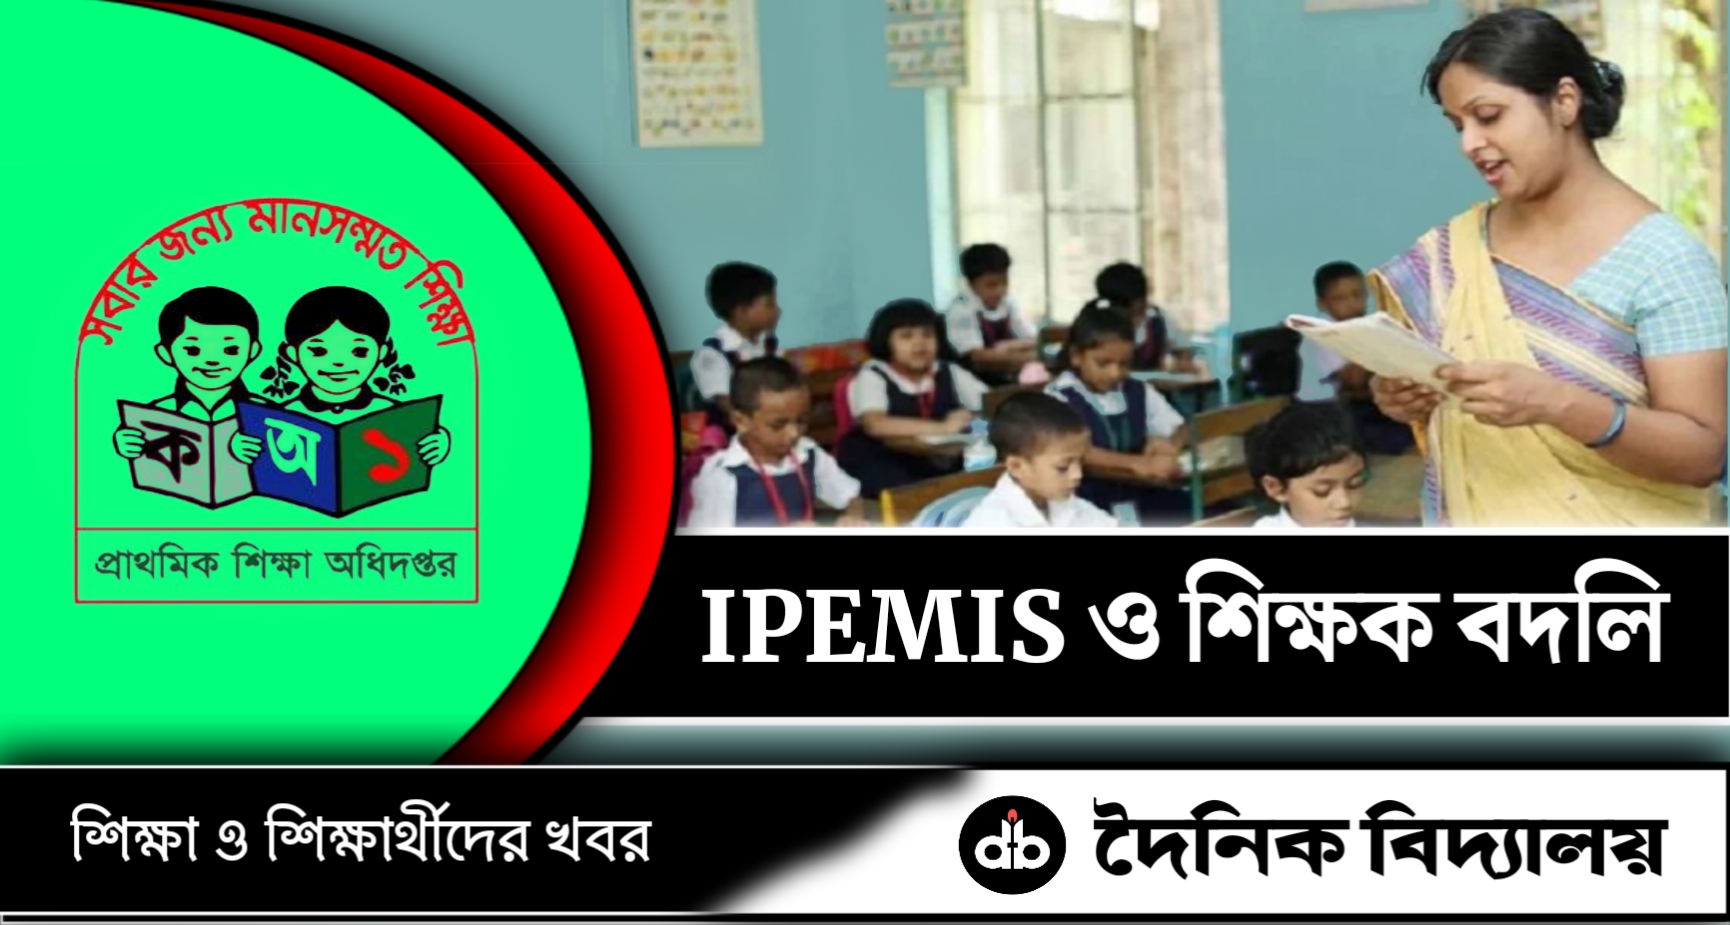 প্রাথমিক শিক্ষকদের অনলাইন বদলী ও IPEMIS নিয়ে পূনরায় নির্দেশনা